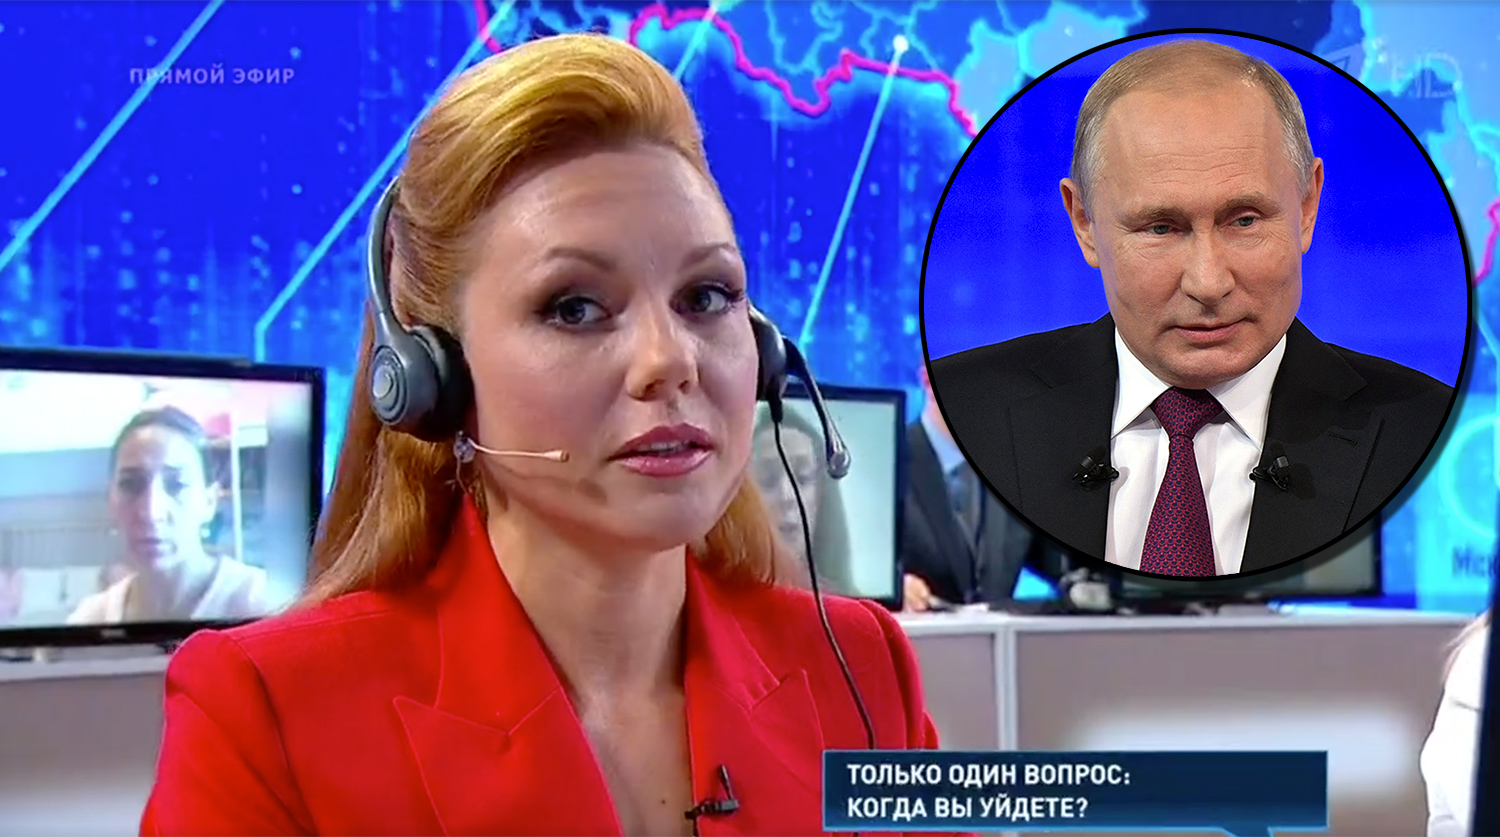 Путин покраснел и начал кашлять на острый вопрос: журналисты прокололись в прямом эфире - кадры